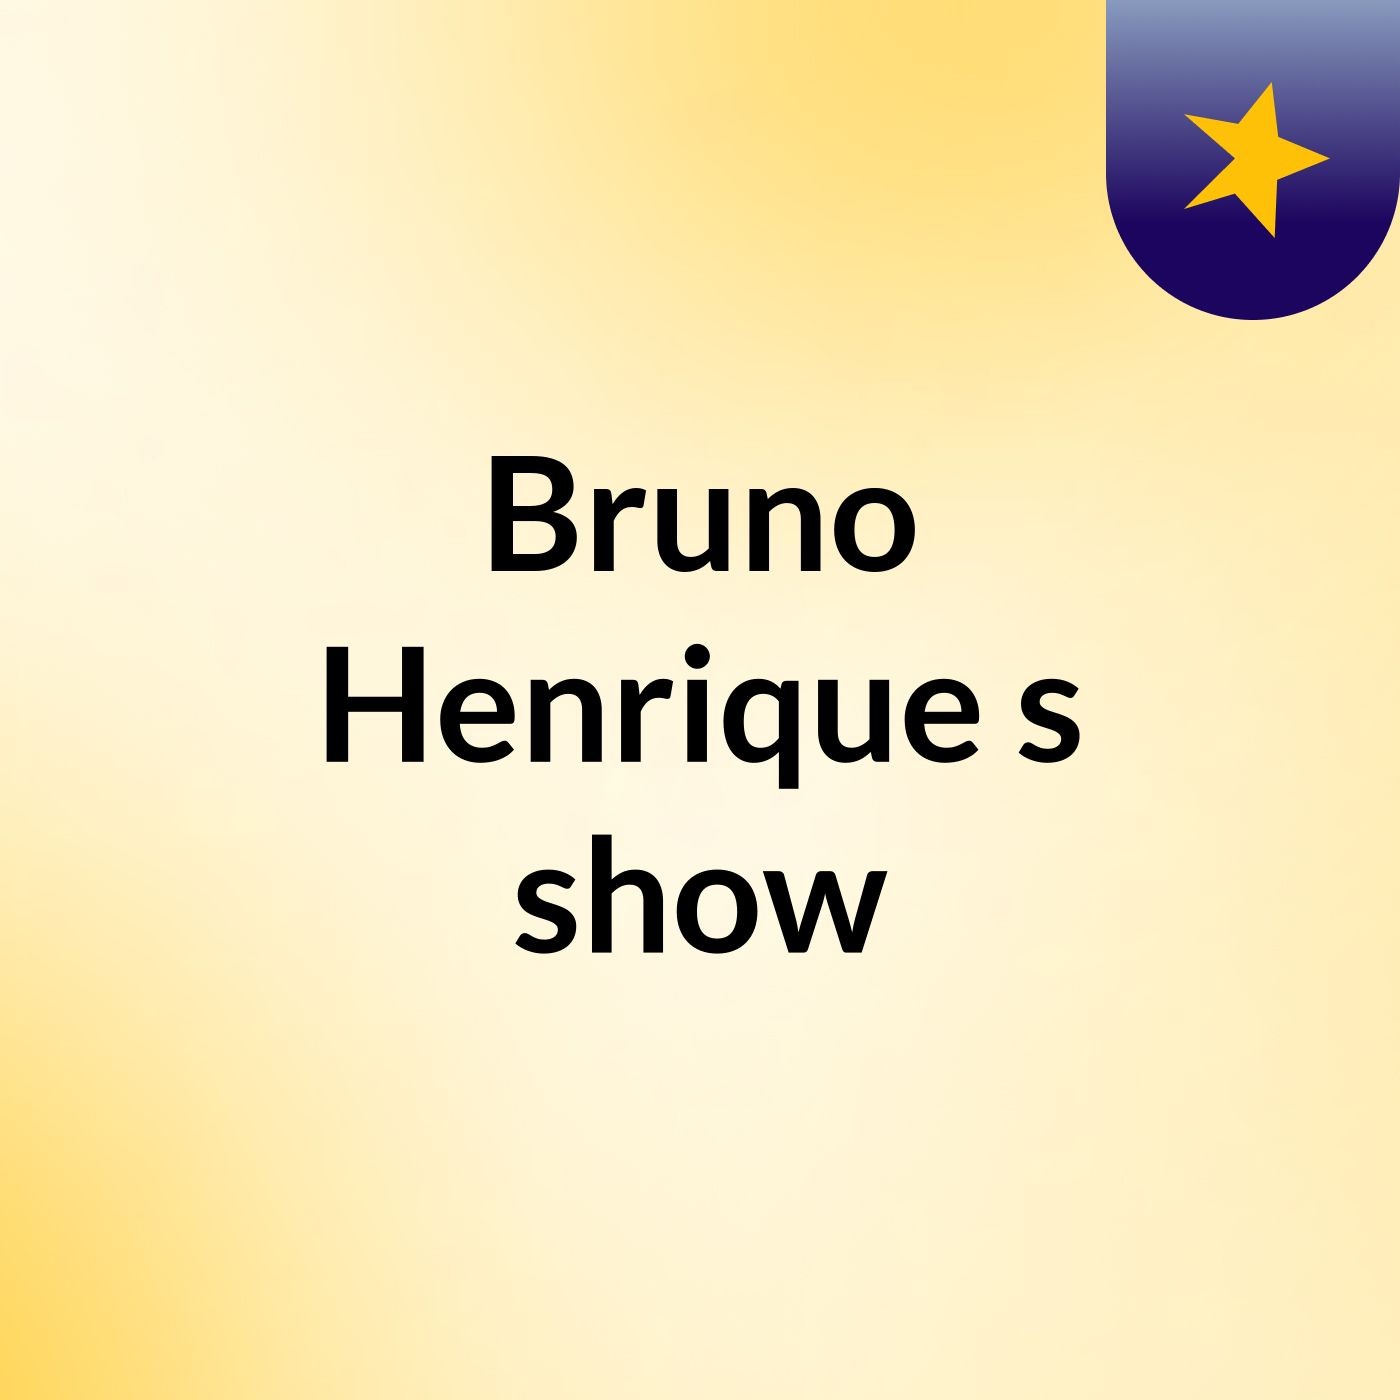 Bruno Henrique's show